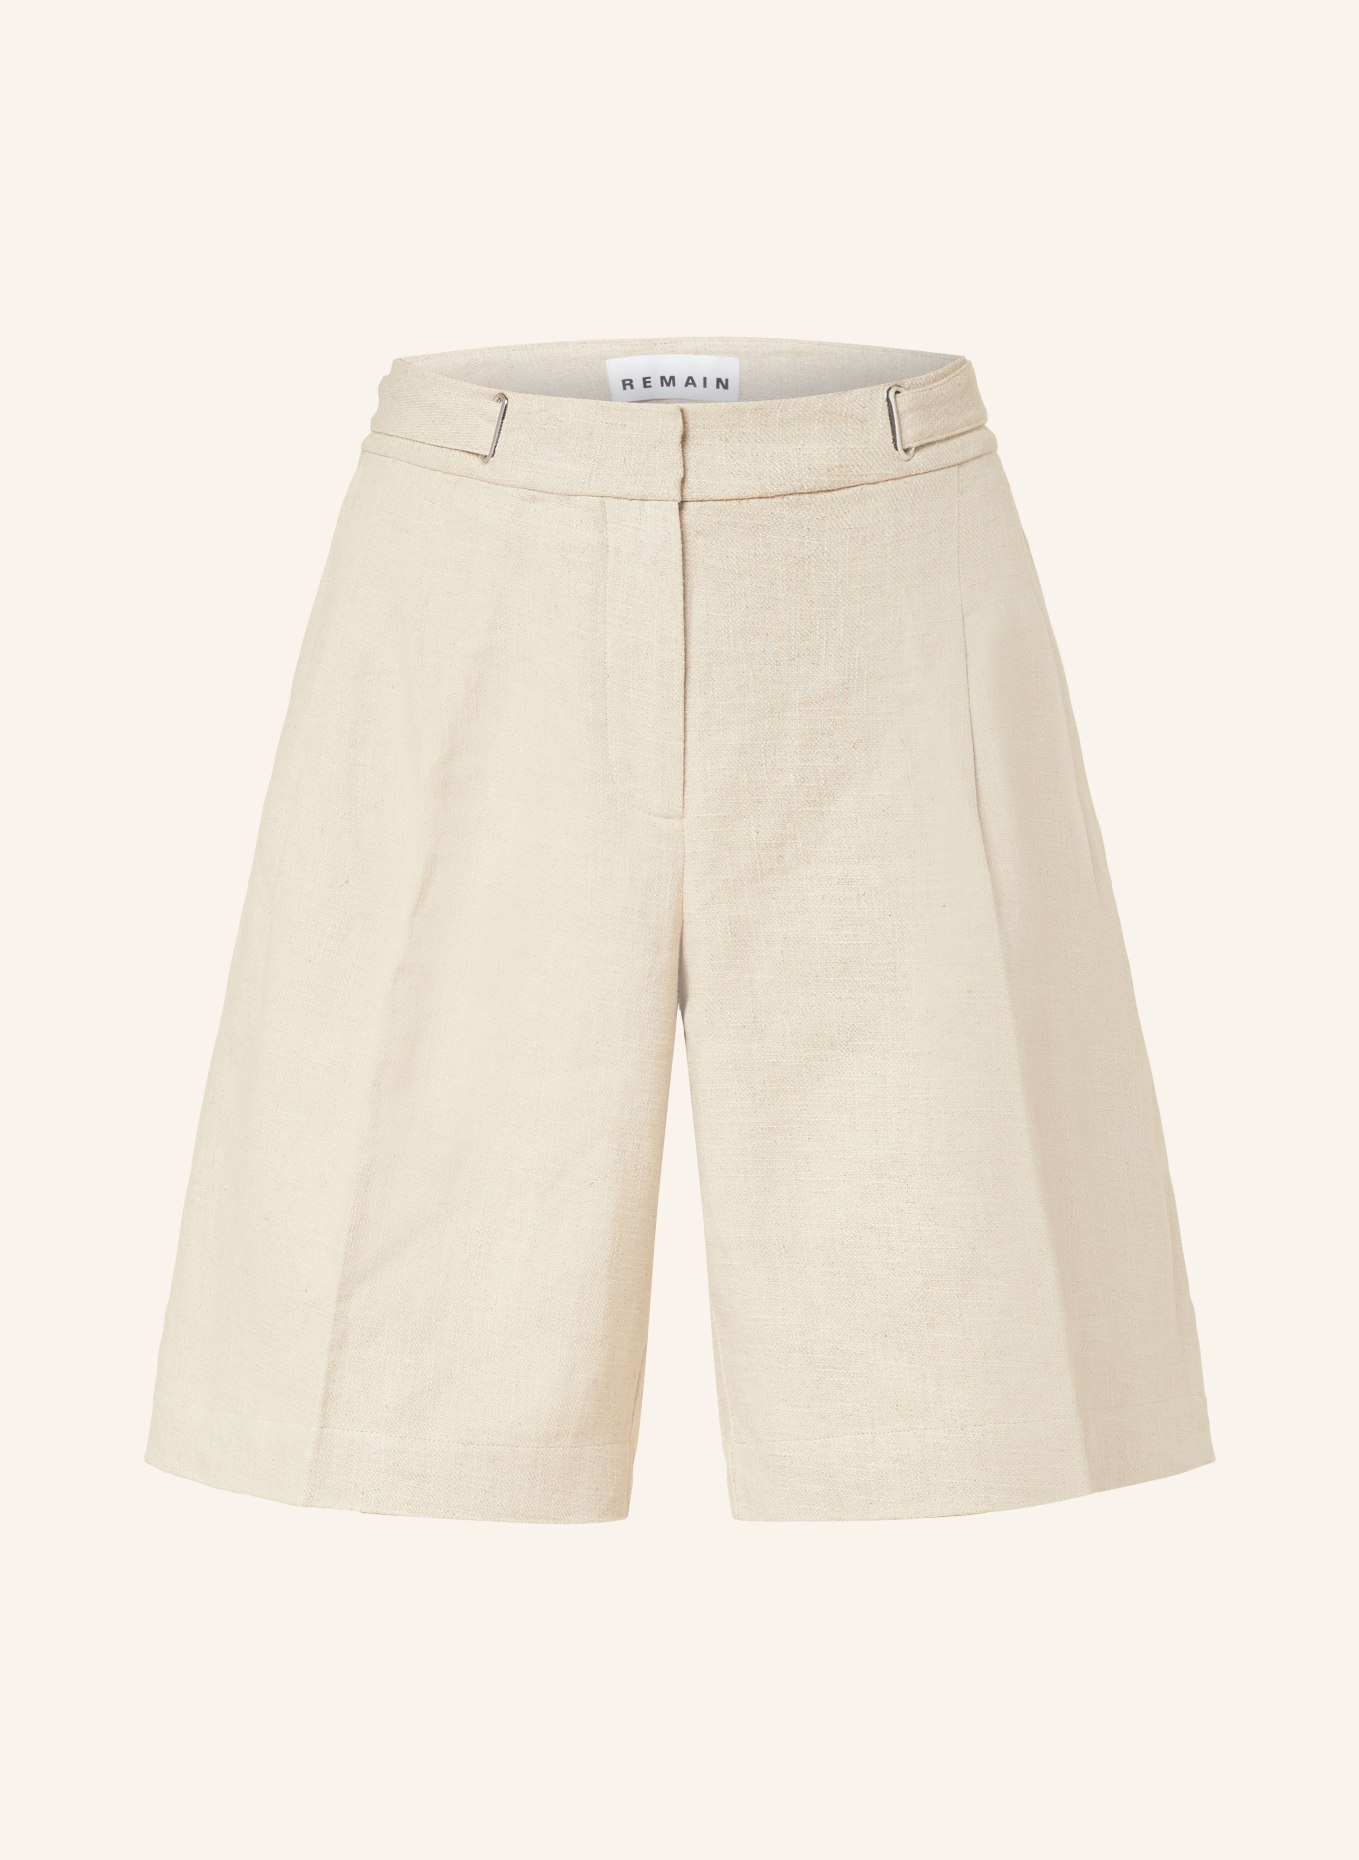 REMAIN Linen shorts, Color: ECRU (Image 1)